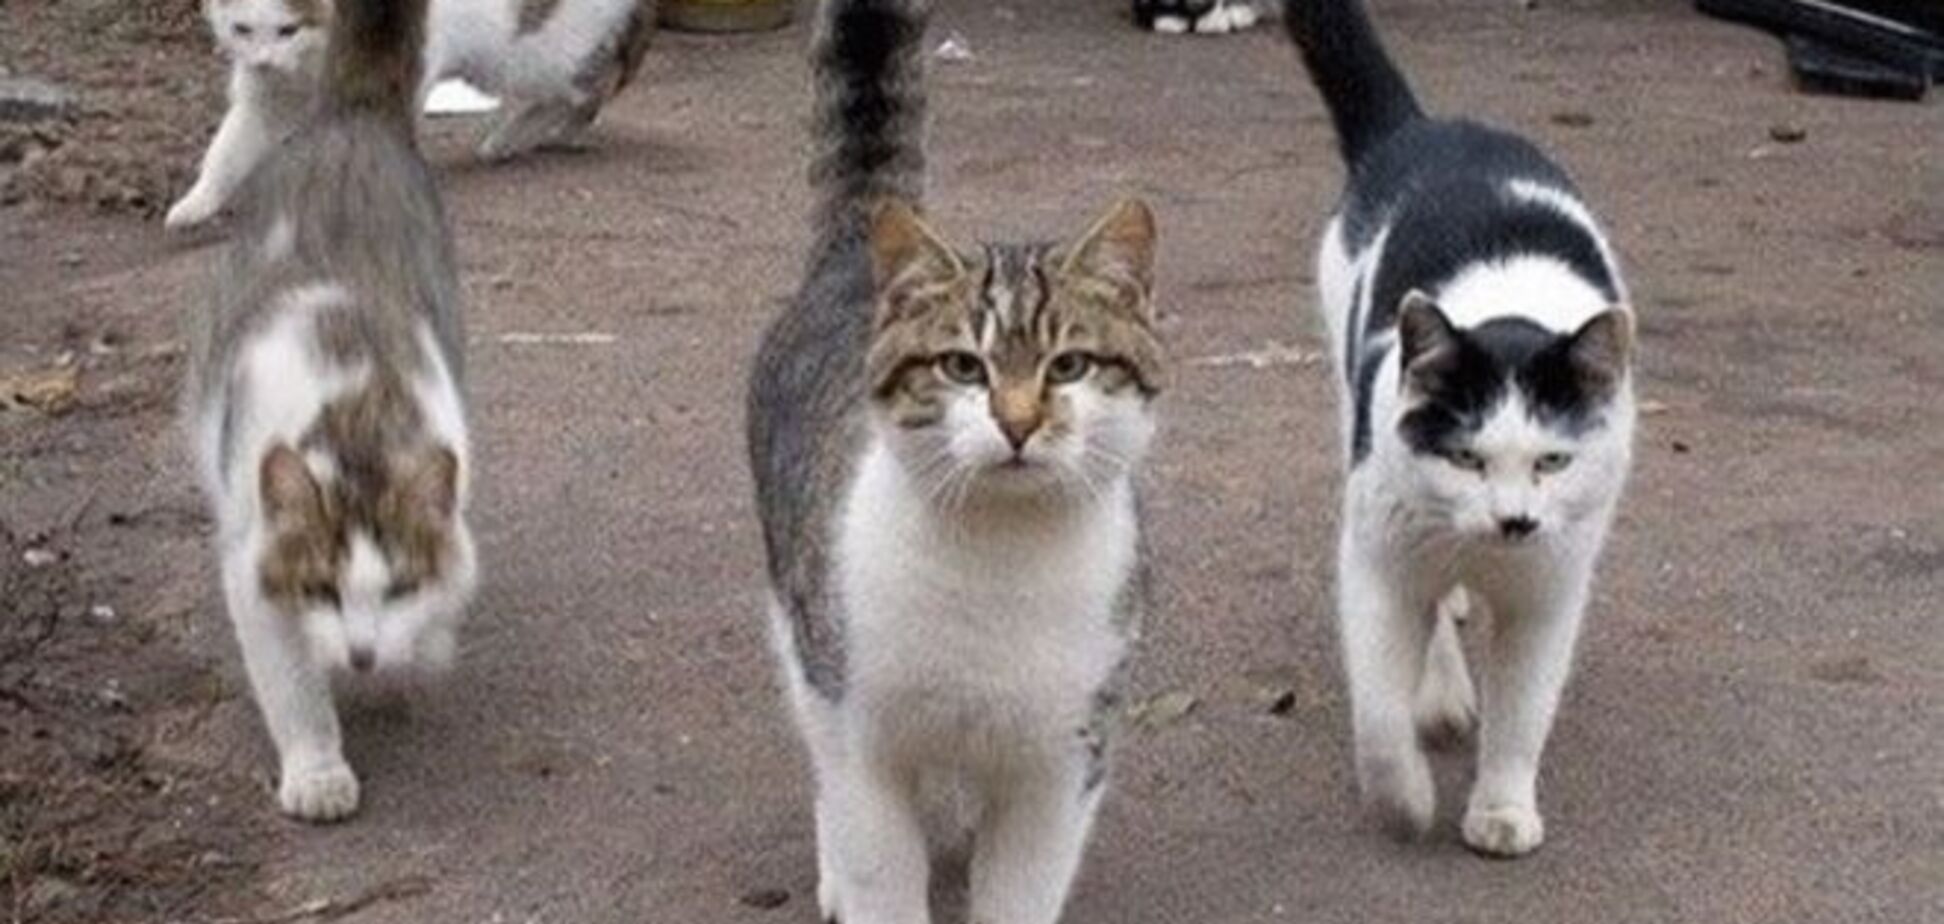 20 снимков суровых дворовых котов